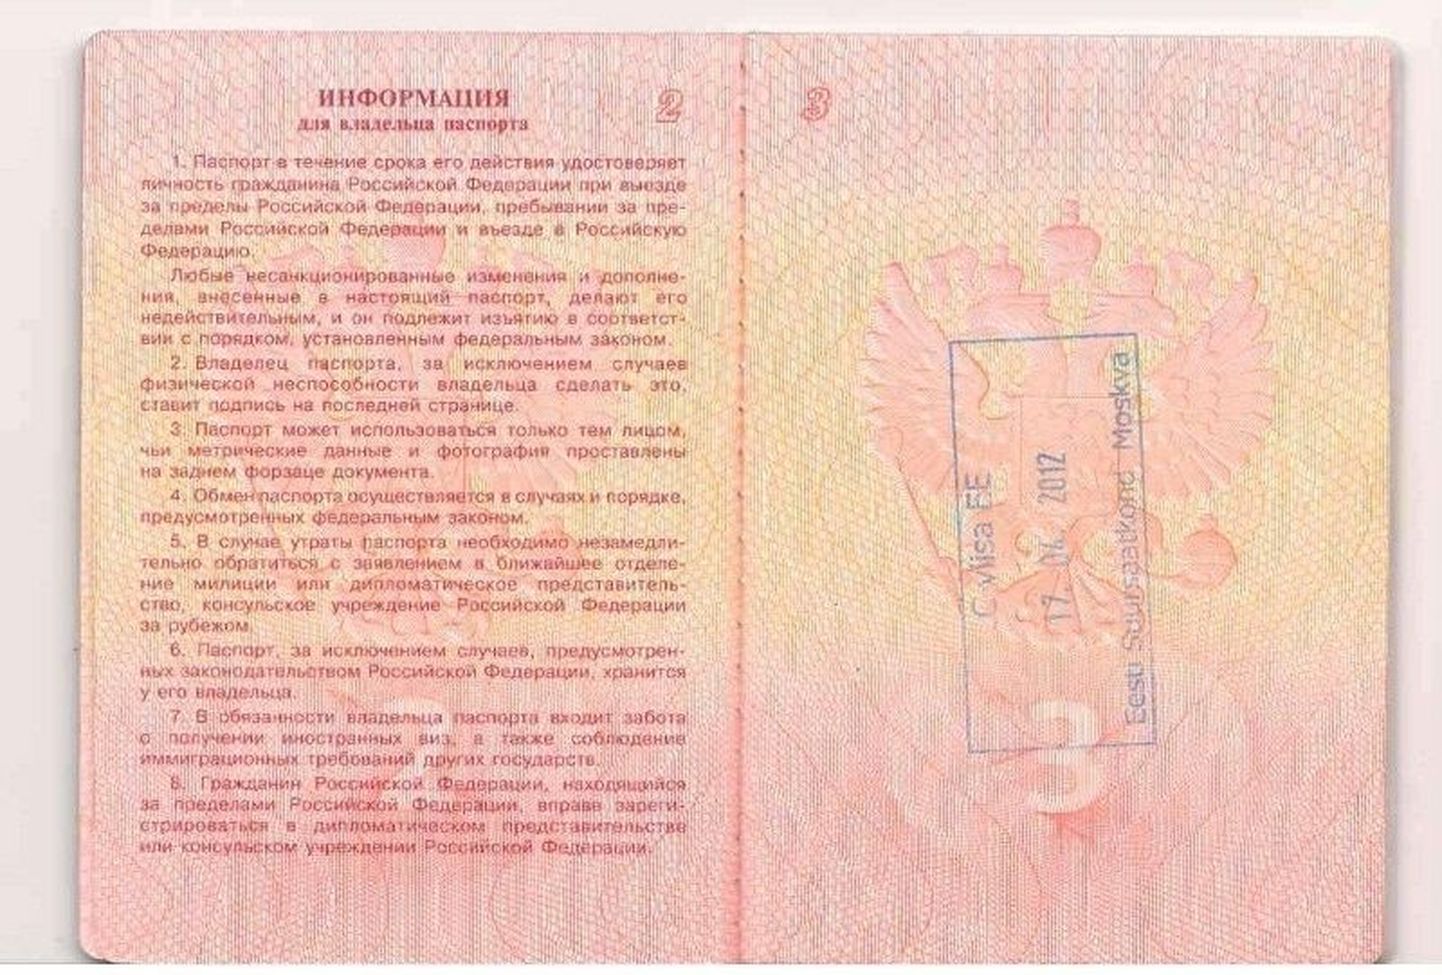 В паспорт каждого ходатайствующего об эстонской визе при получении документов ставят такую вот печать. Если разрешение на въезд дают, то визу наклеивают прямо на отметину, если отказывают – печать сохраняется и служит сигналом для диппредставительств других стран.